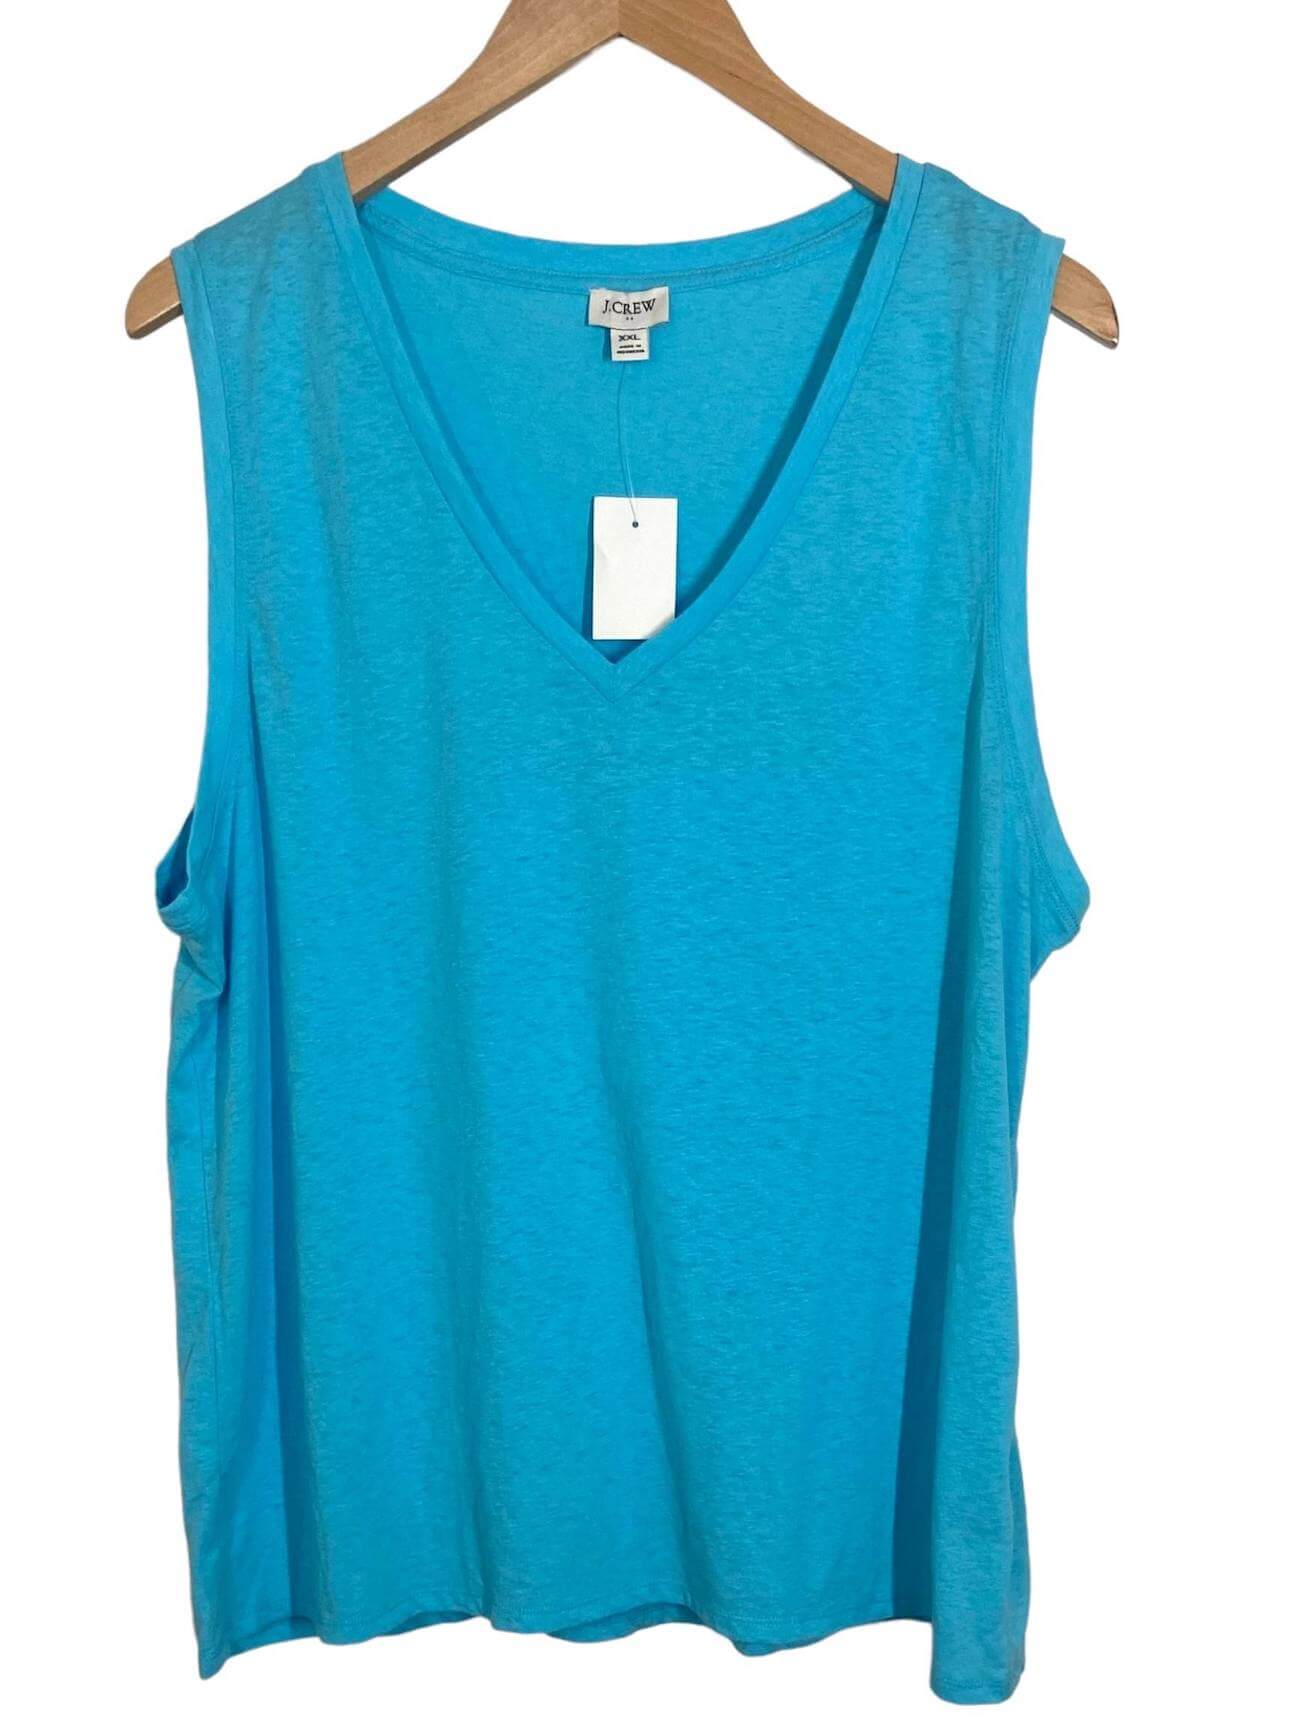 Light Summer J.CREW turquoise sleeveless v-neck tee